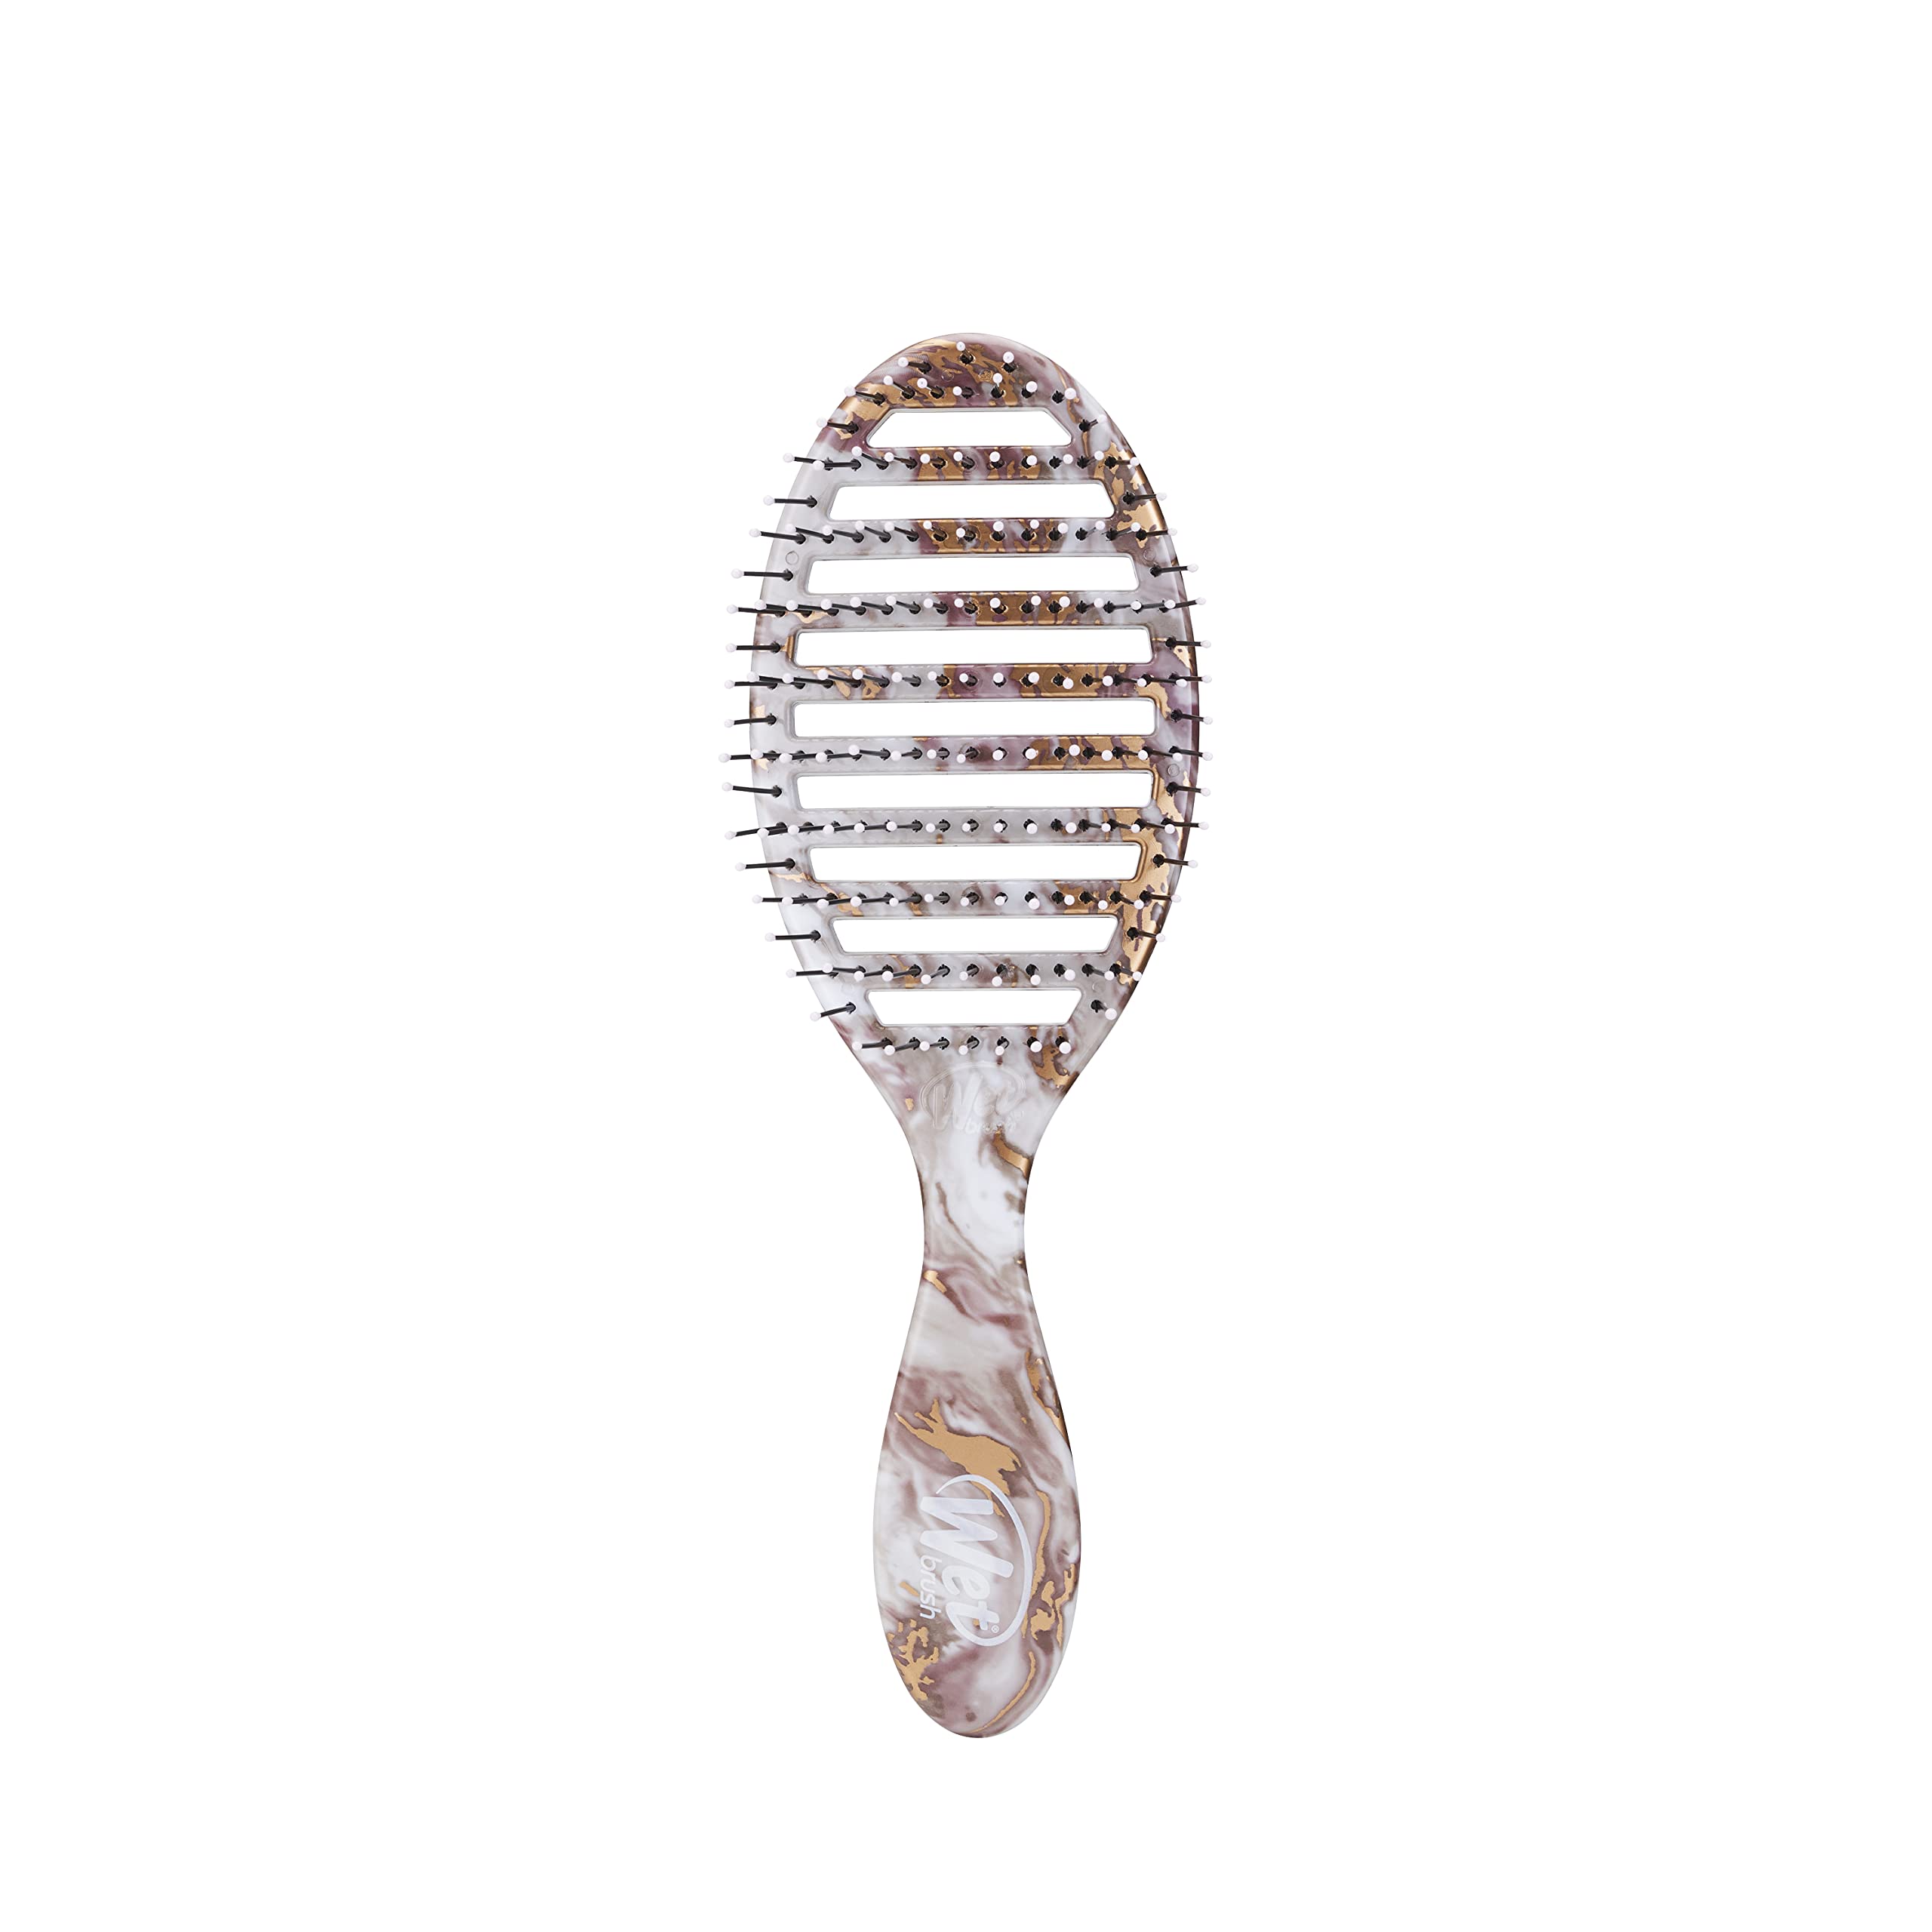 WetBrush Speed Dry Detangler mit hitzebeständigen Heatflex-Borsten und offenem Belüftungsdesign, um das Haar schneller zu trocknen, für alle Haartypen, Metallic Marble Collection, Bronze